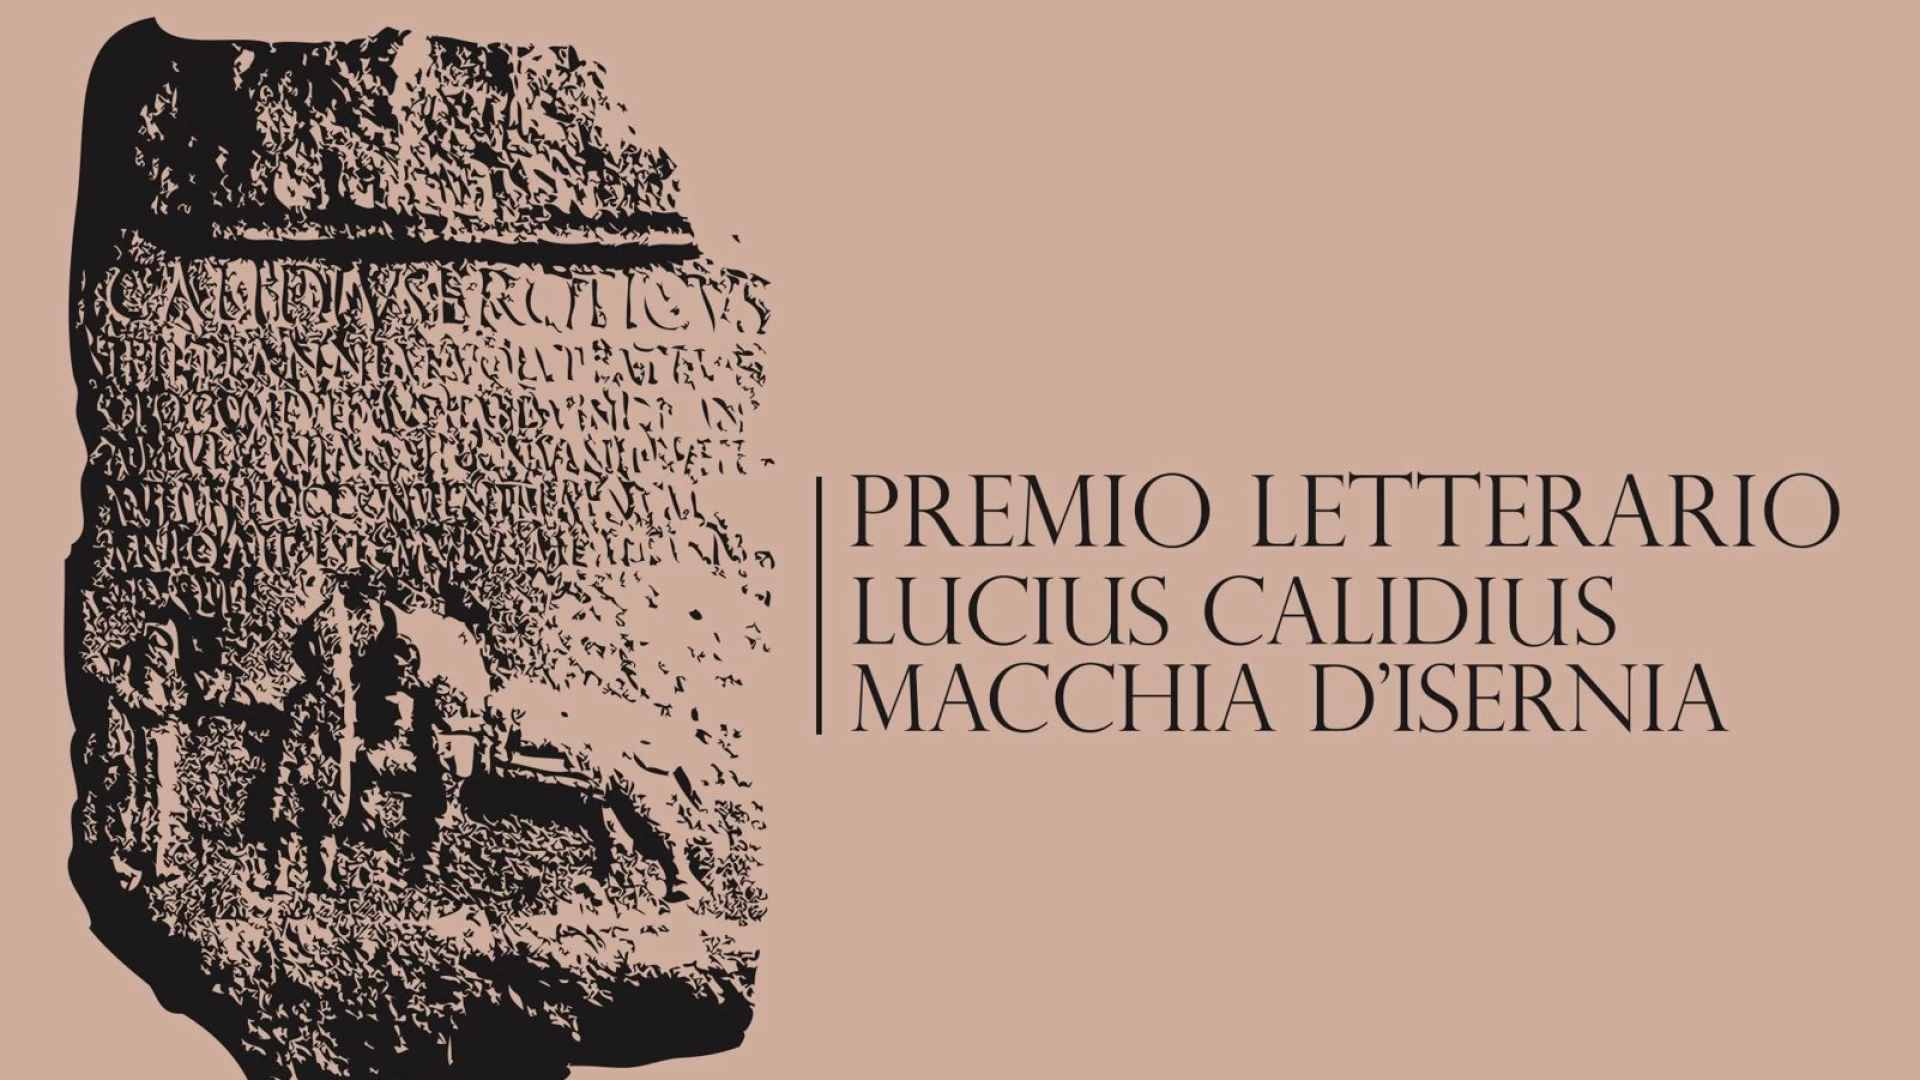 Macchia d’Isernia: il 4 gennaio la presentazione del premio letterario “Lucius Calidius”.